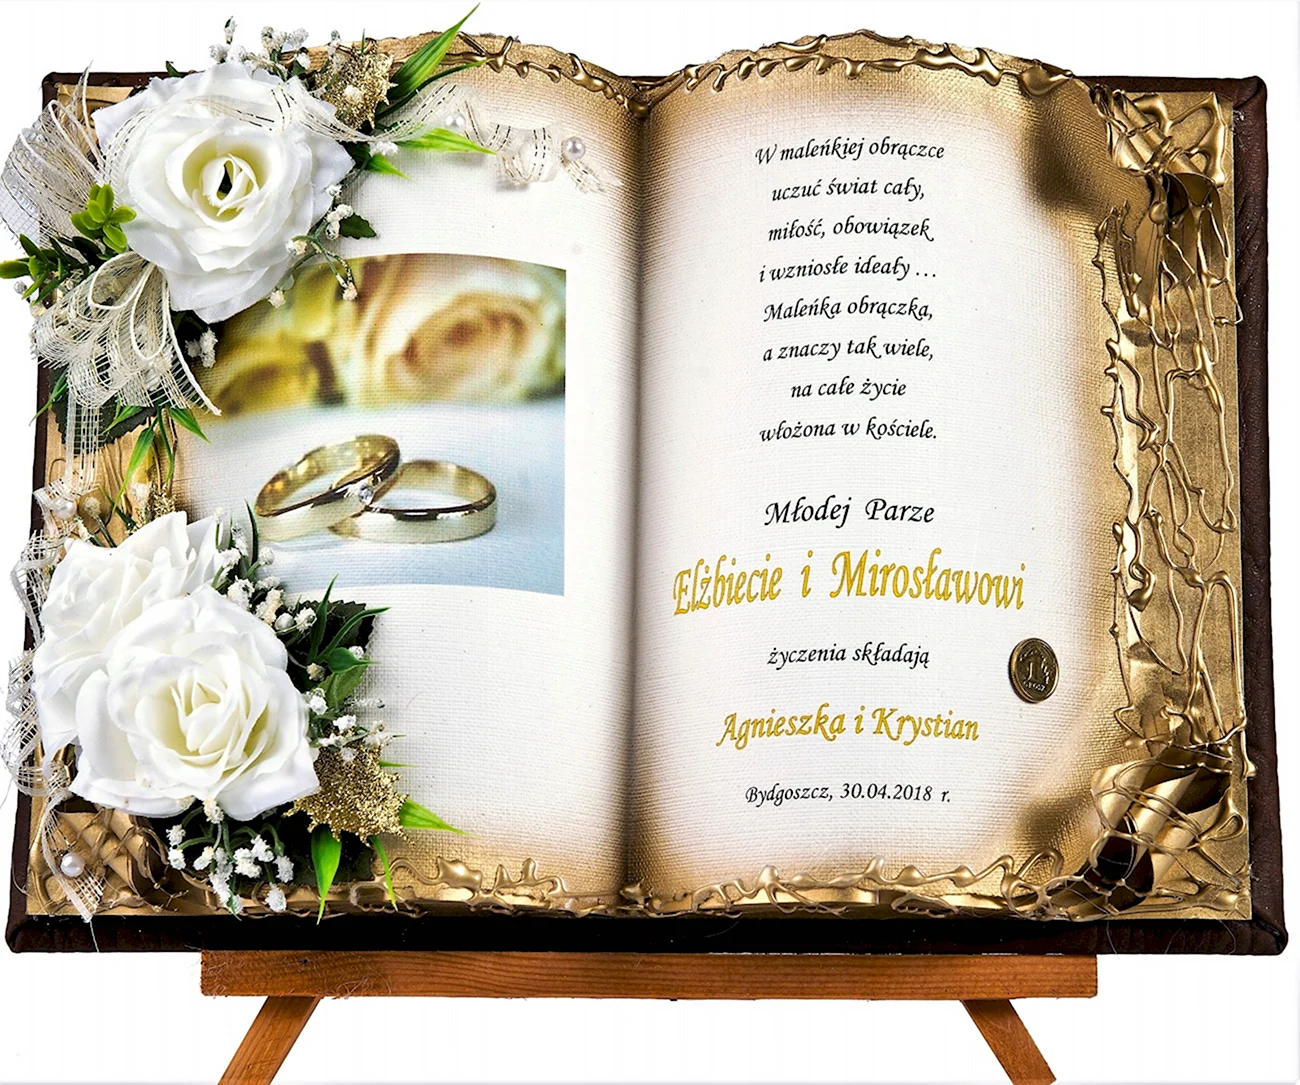 Открытки с золотой свадьбой родителям. Поздравление с годовщиной свадьбы